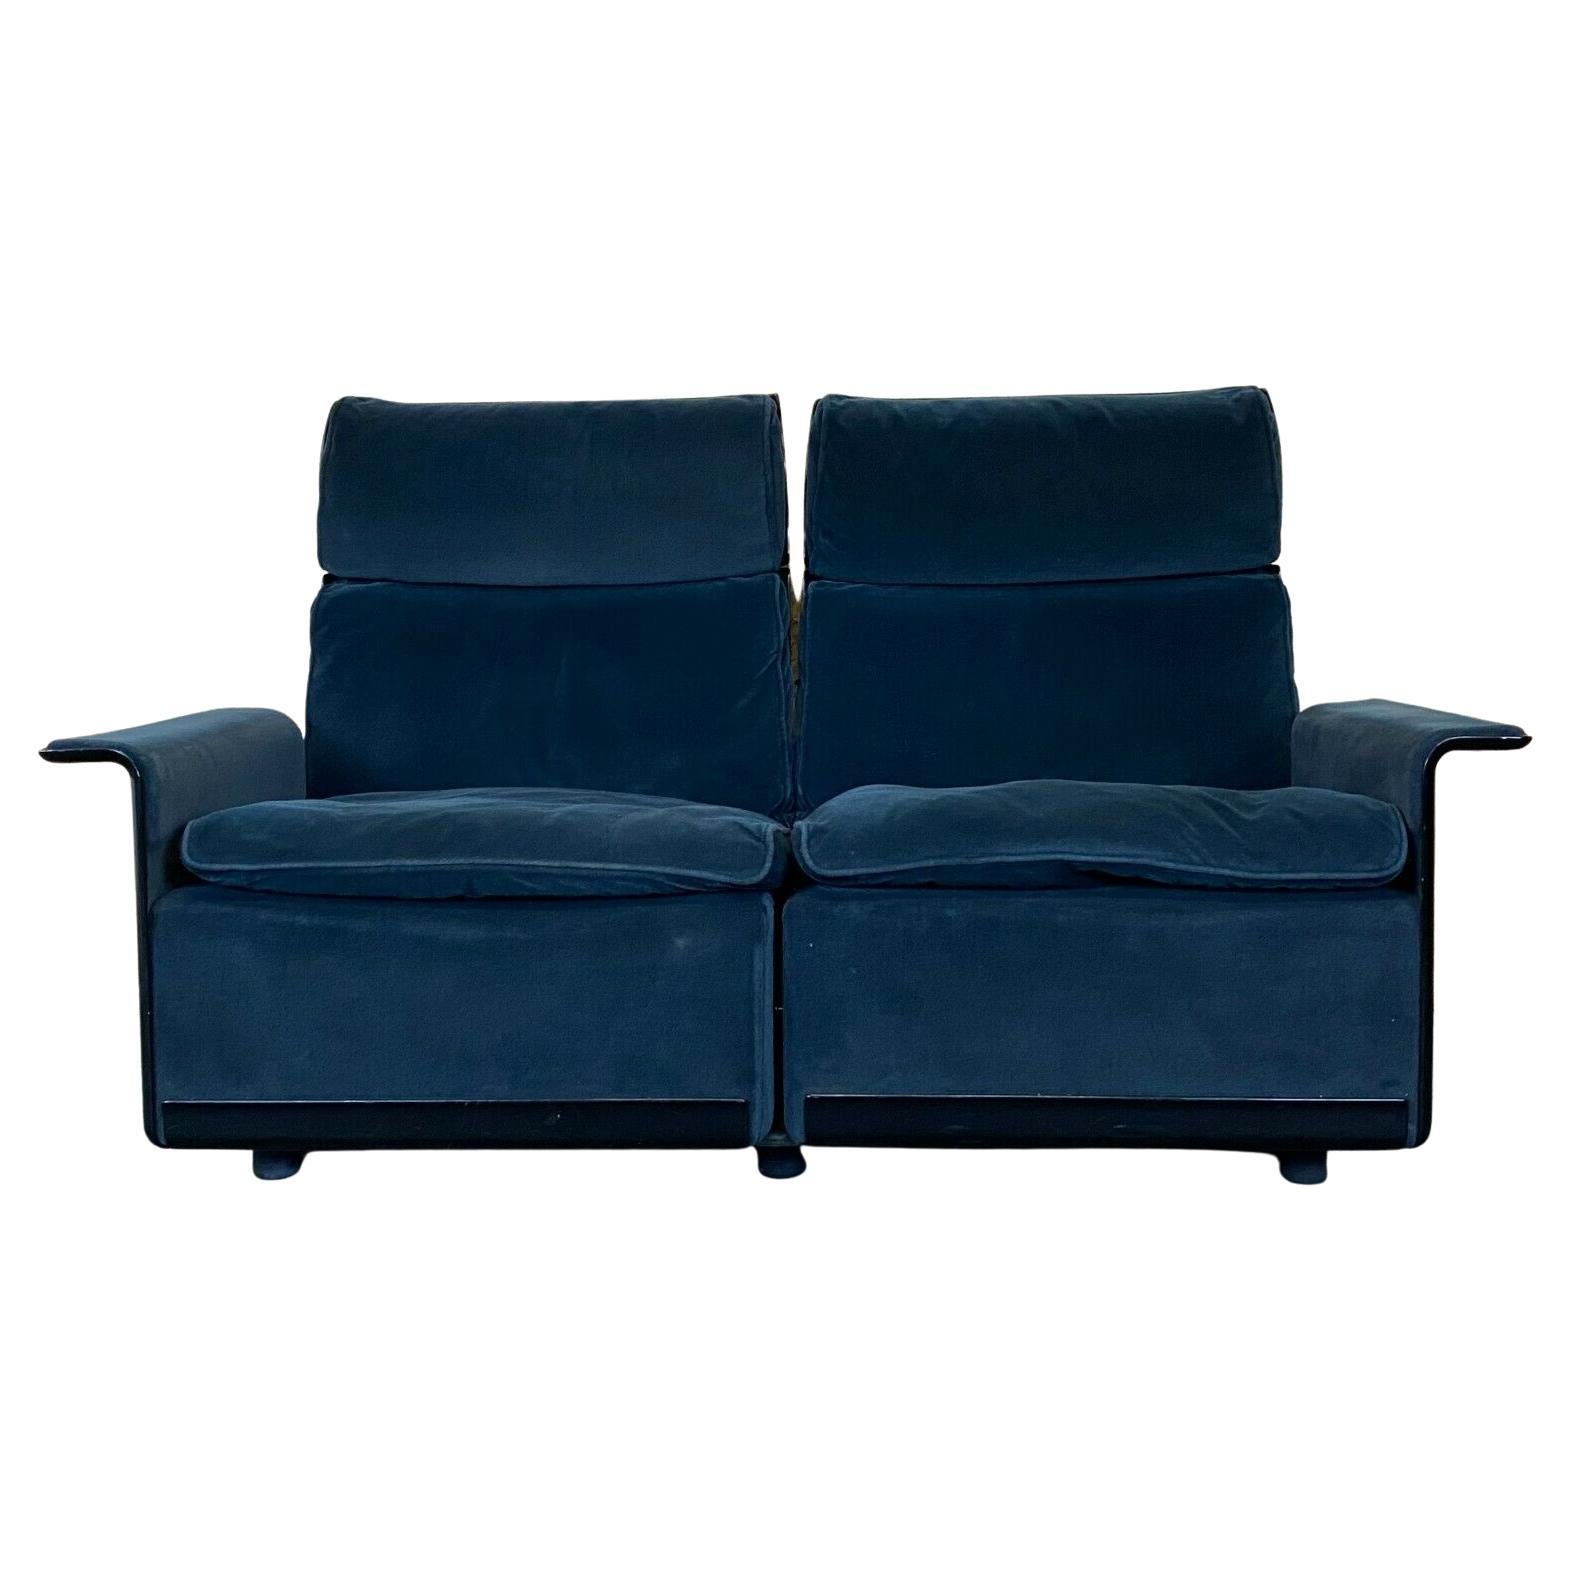 Fauteuil Dieter Rams pour Vitsoe Program 620 Design Couch Fabric Object (années 1970)